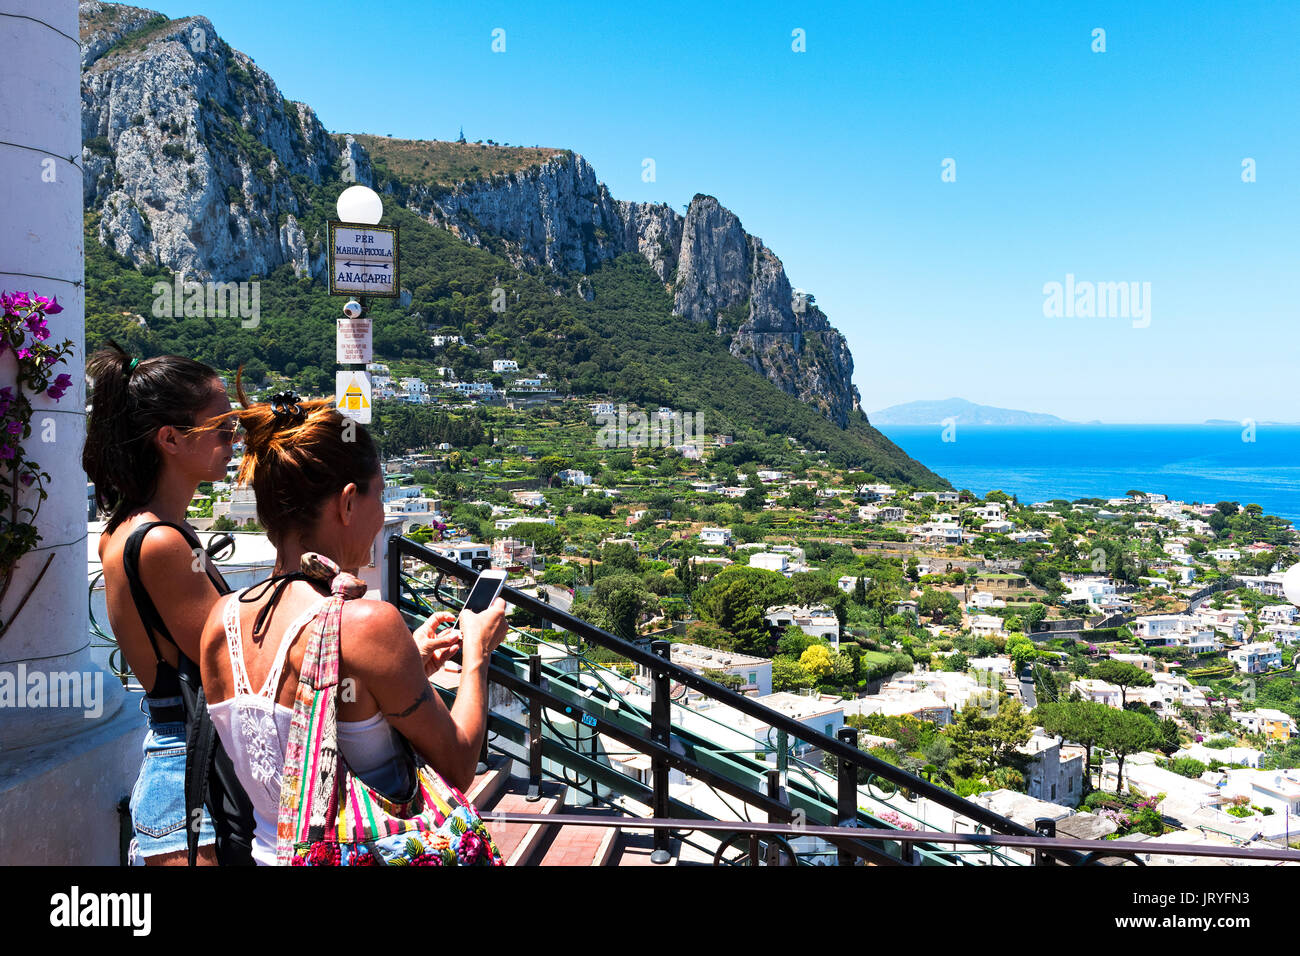 Les touristes de prendre des photos de vacances sur l'île de Capri, italie Banque D'Images